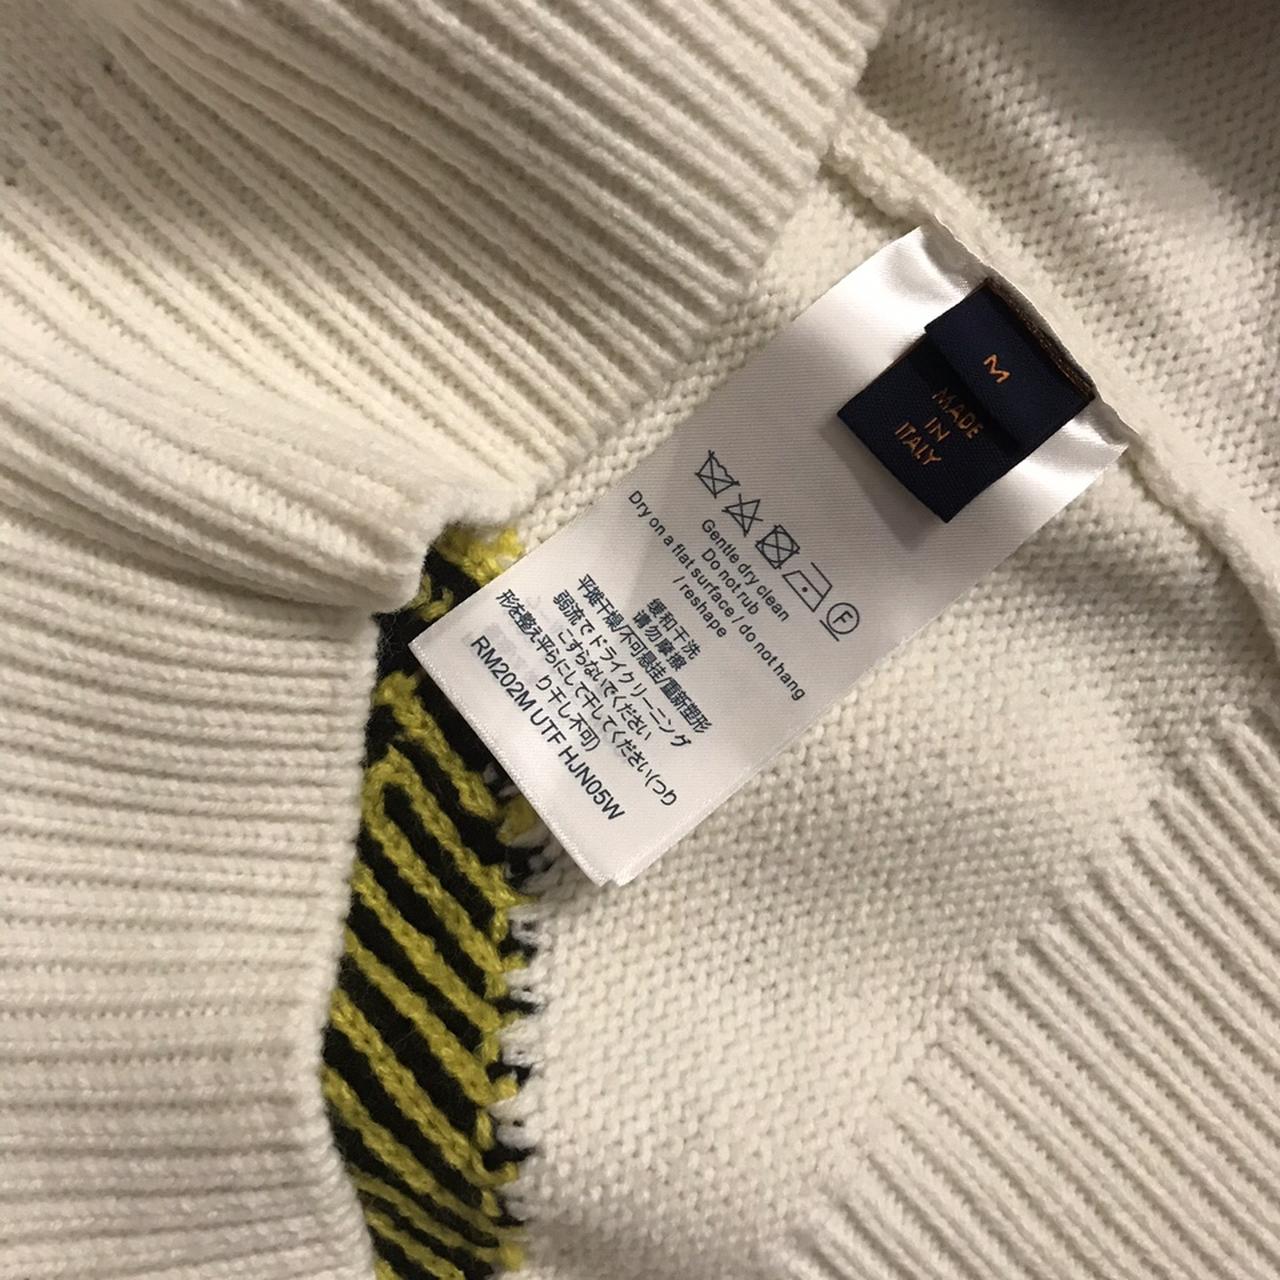 FIND] Louis Vuitton Multicoloured Monogram Crewneck Sweater : r/DesignerReps